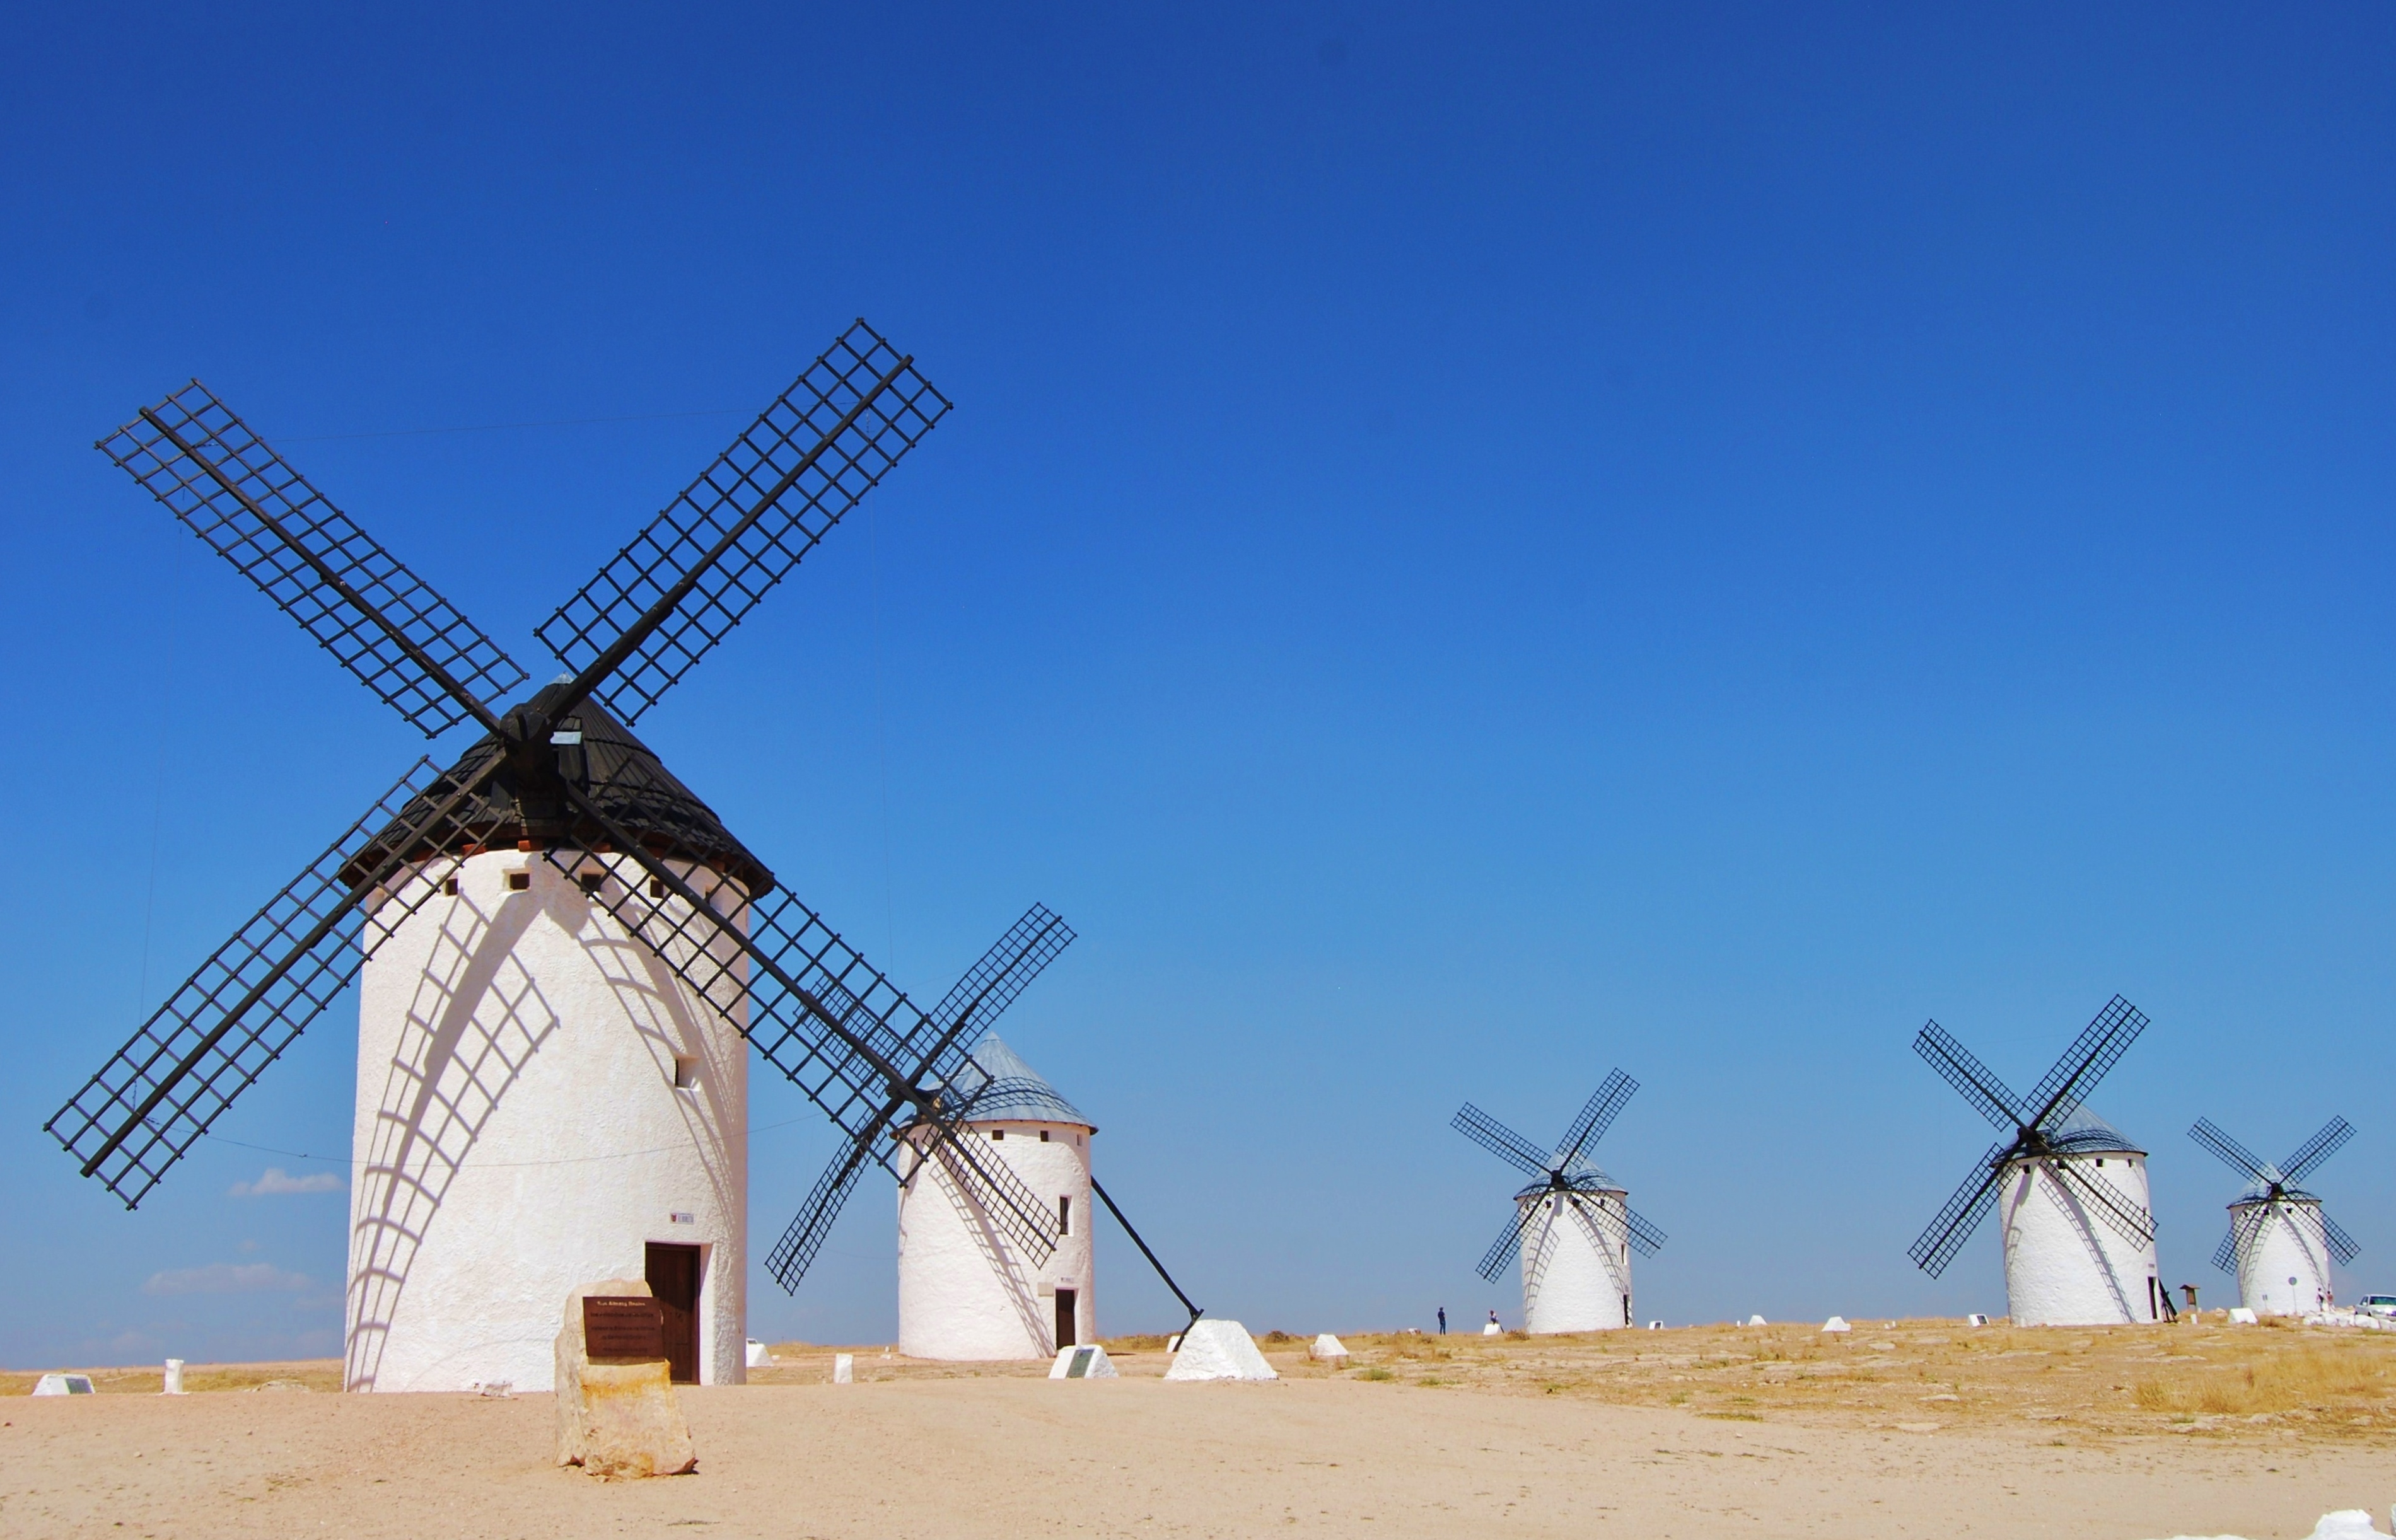 wind-mills-with-blue-sky-in-campo-de-criptana-cas-2021-09-02-02-03-40-utc